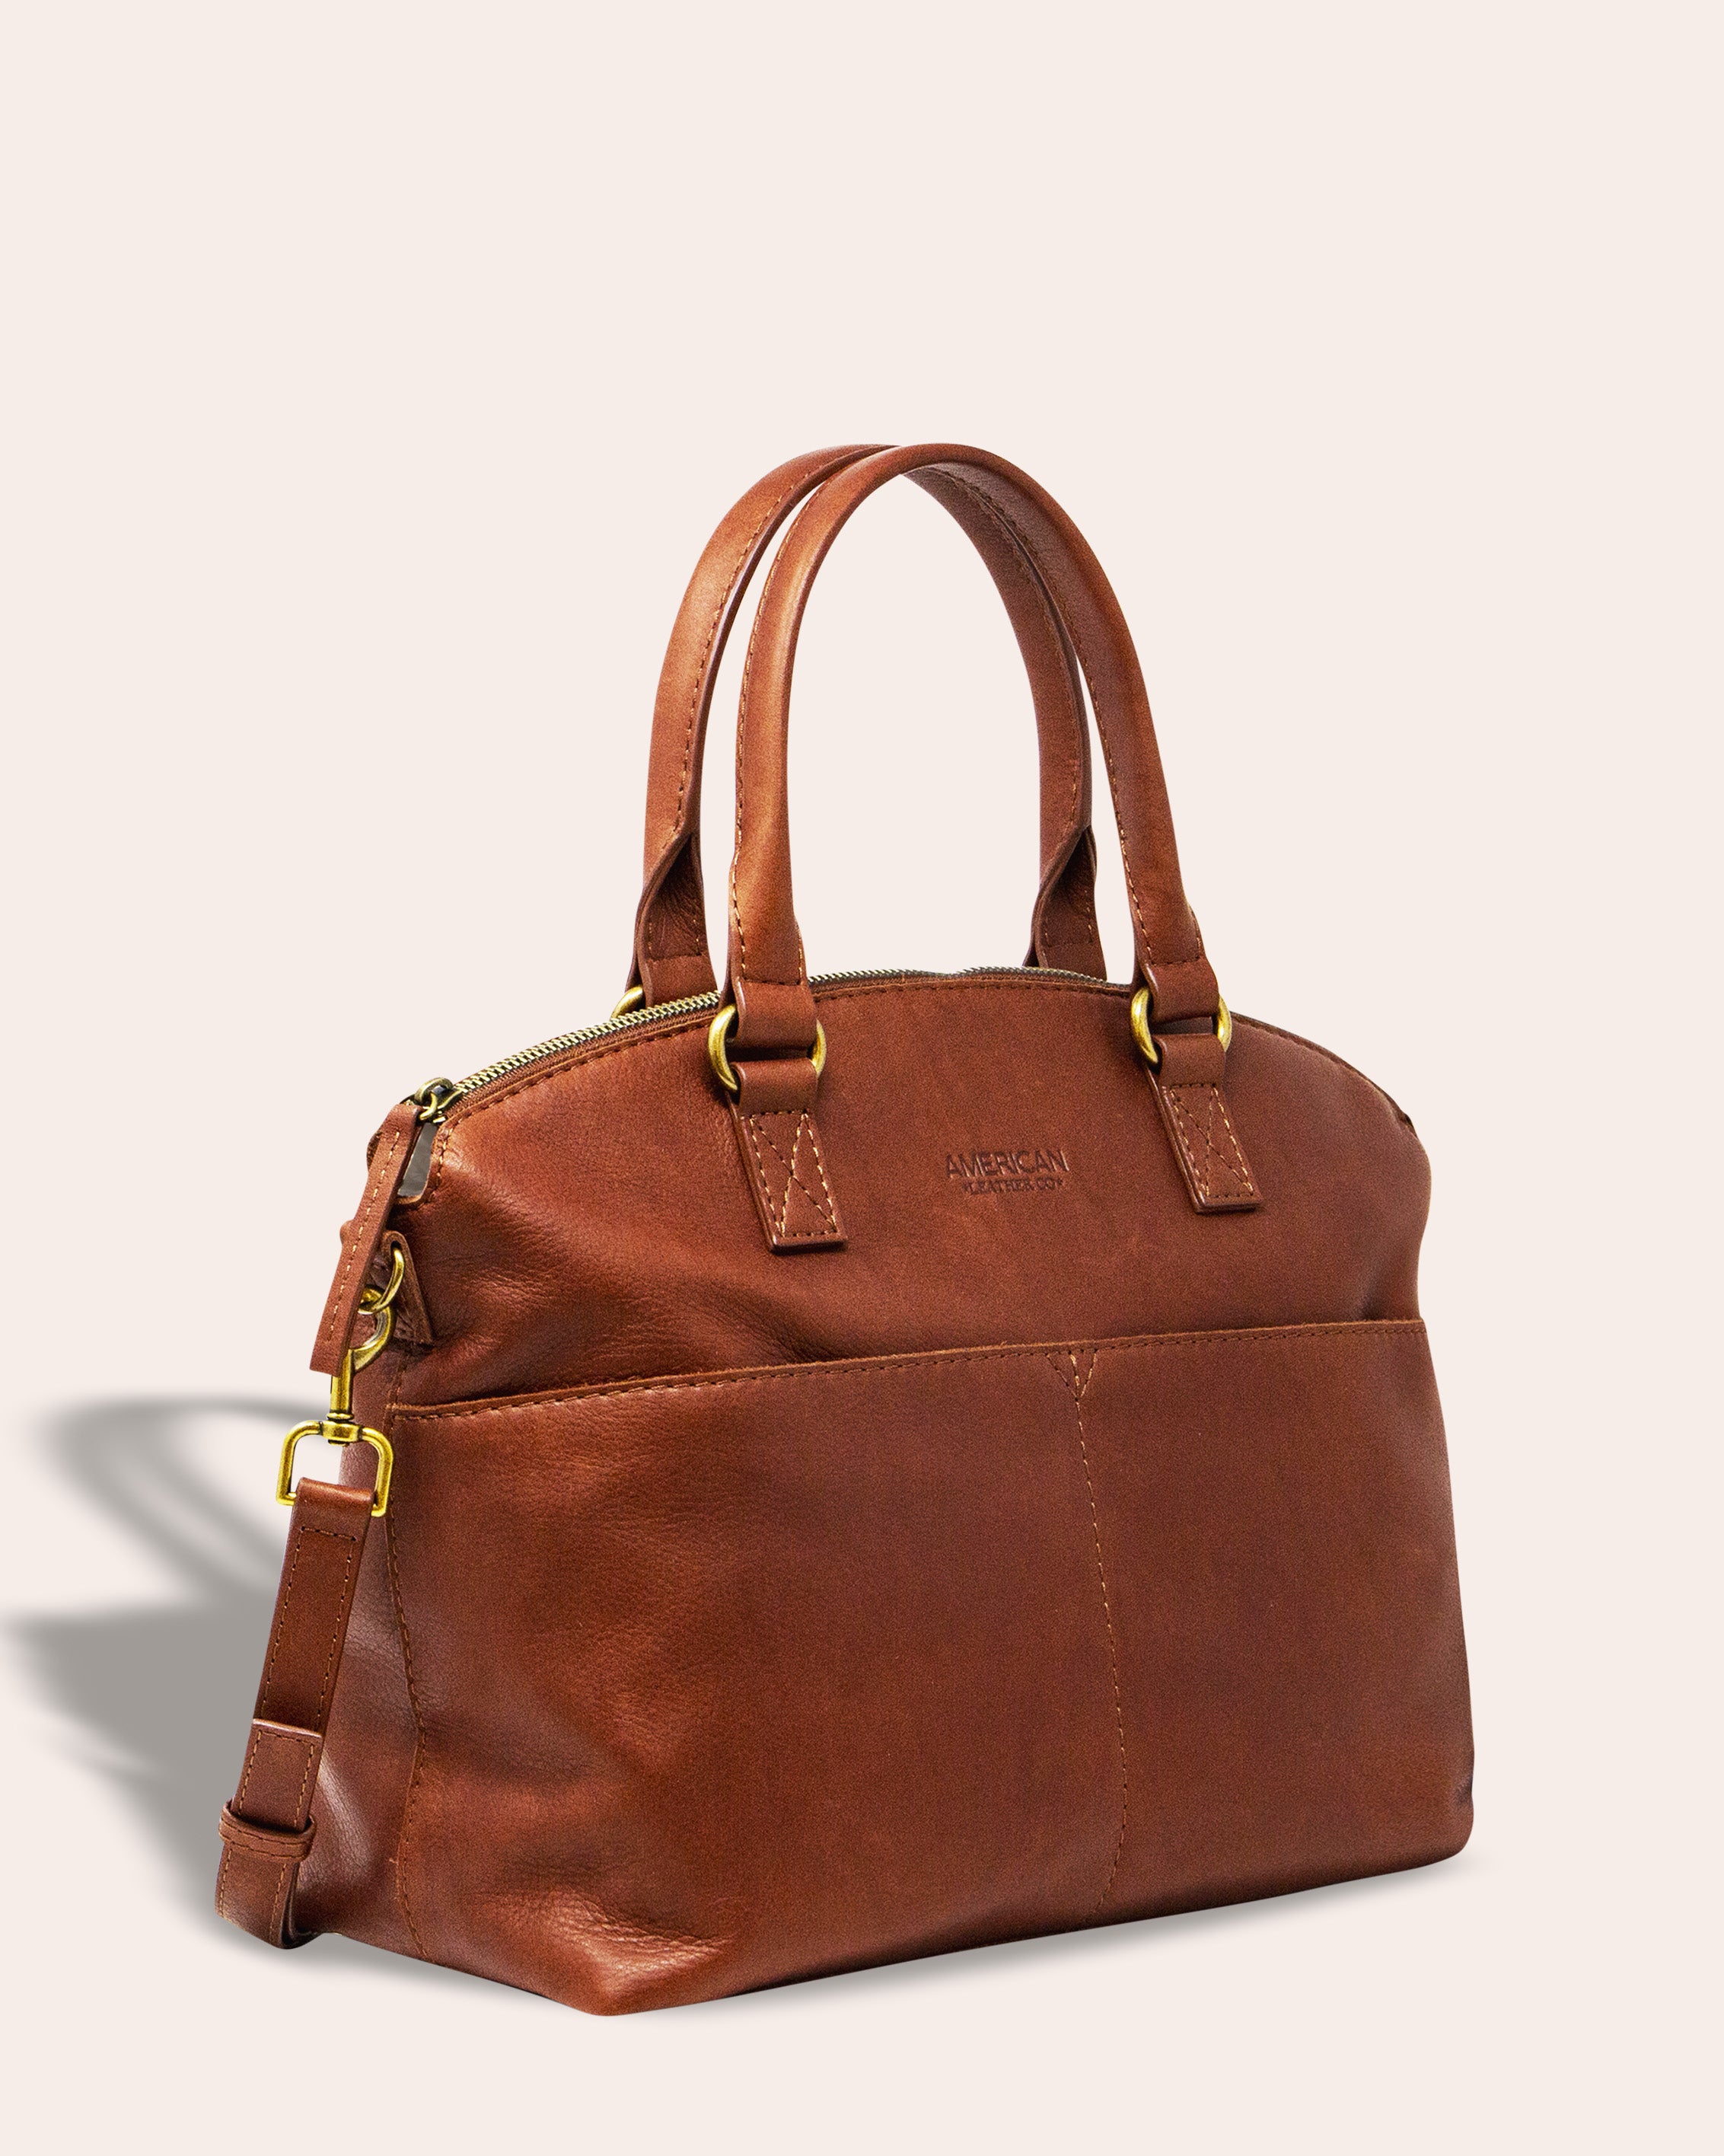 Small Crossbody Bags for Women Classic Zip Top Handle Dome Satchel Bag  Shoulder Purse,green - Walmart.com